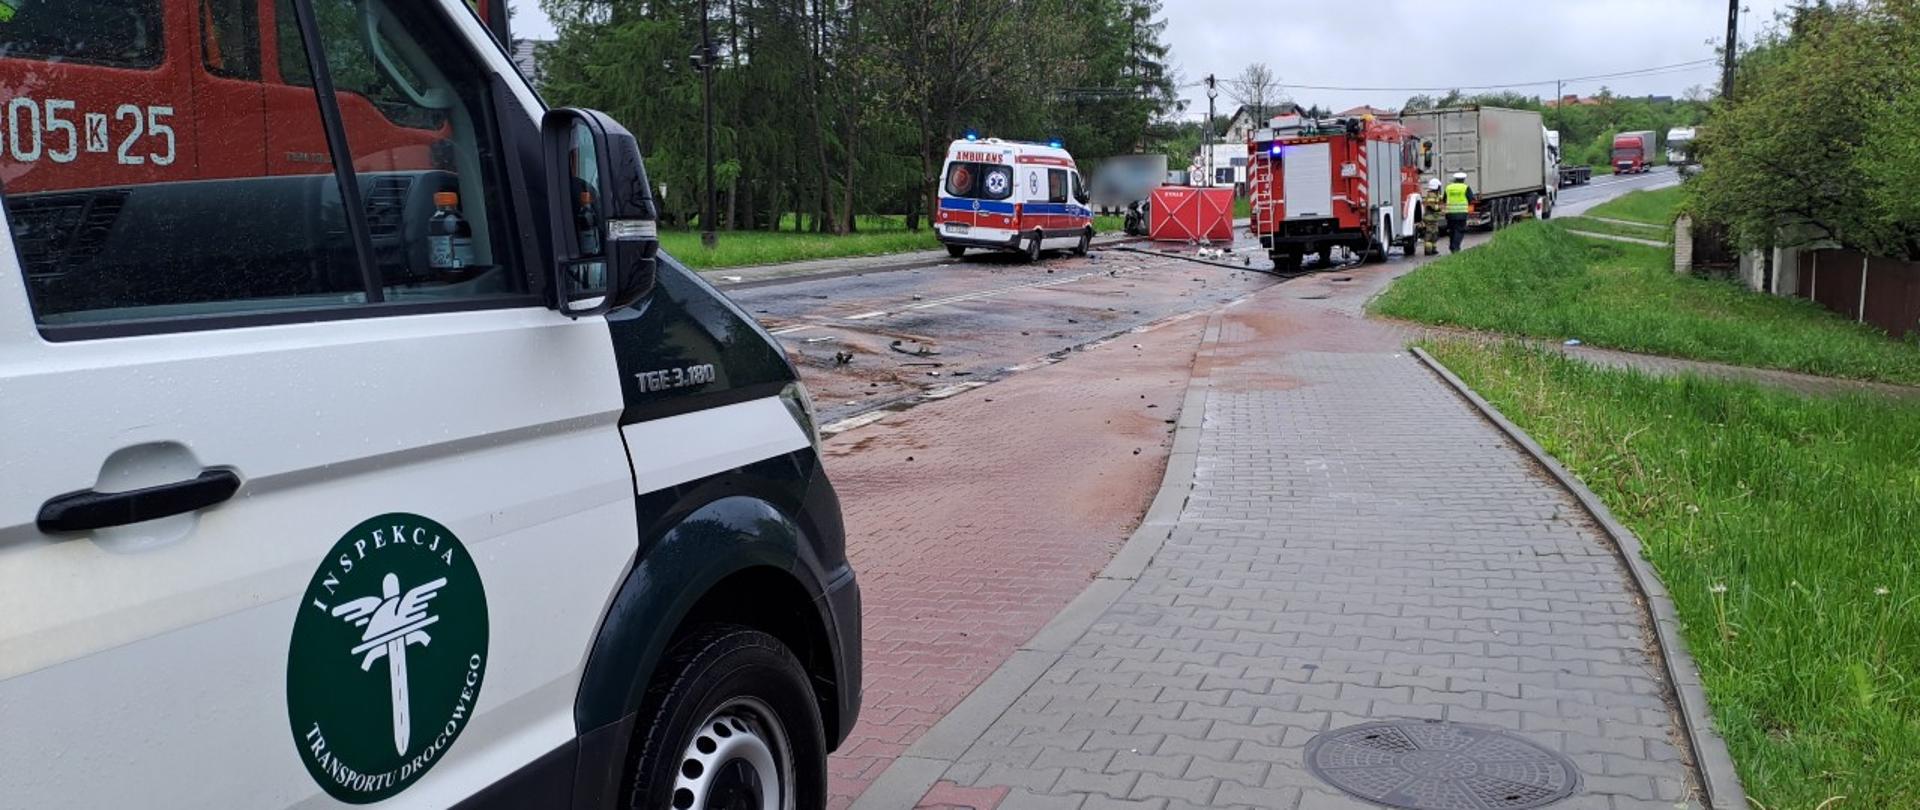 Na pierwszym planie (od lewej): prawy bok oznakowanego furgonu małopolskiej Inspekcji Transportu Drogowego. W tle: karetka pogotowia ratunkowego, wóz straży pożarnej, rozbity samochód osobowy na środku drogi i zestaw ciężarowy biorący udział w wypadku.